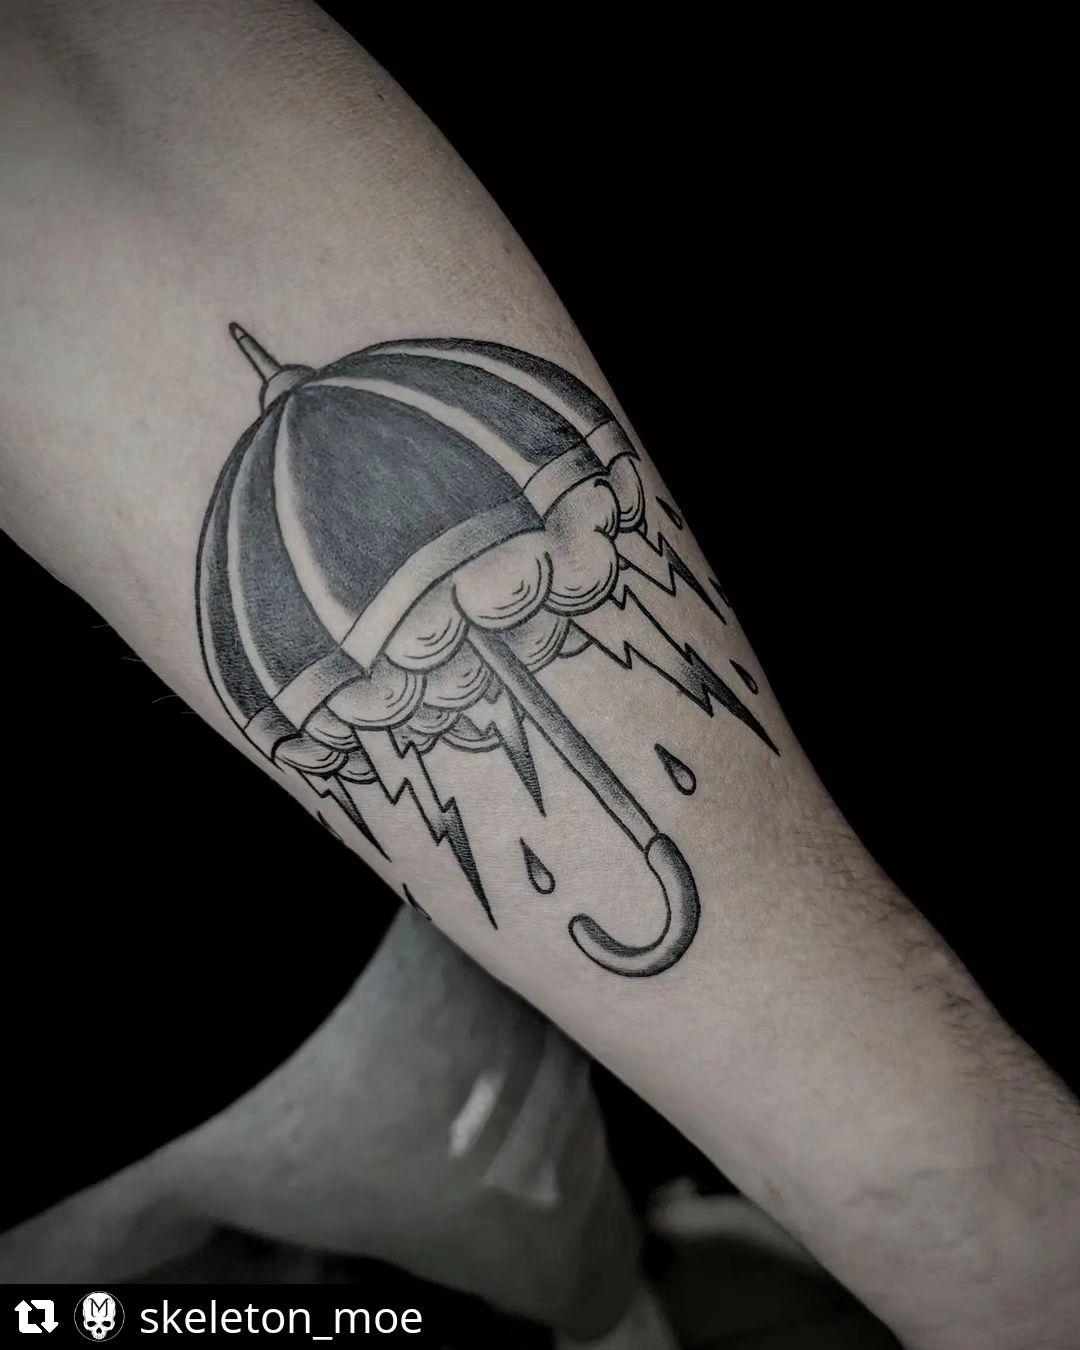 Regenschirm von @skeleton_moe
• • • • • •
Umbrella for homey @davmey #tattoo #ta